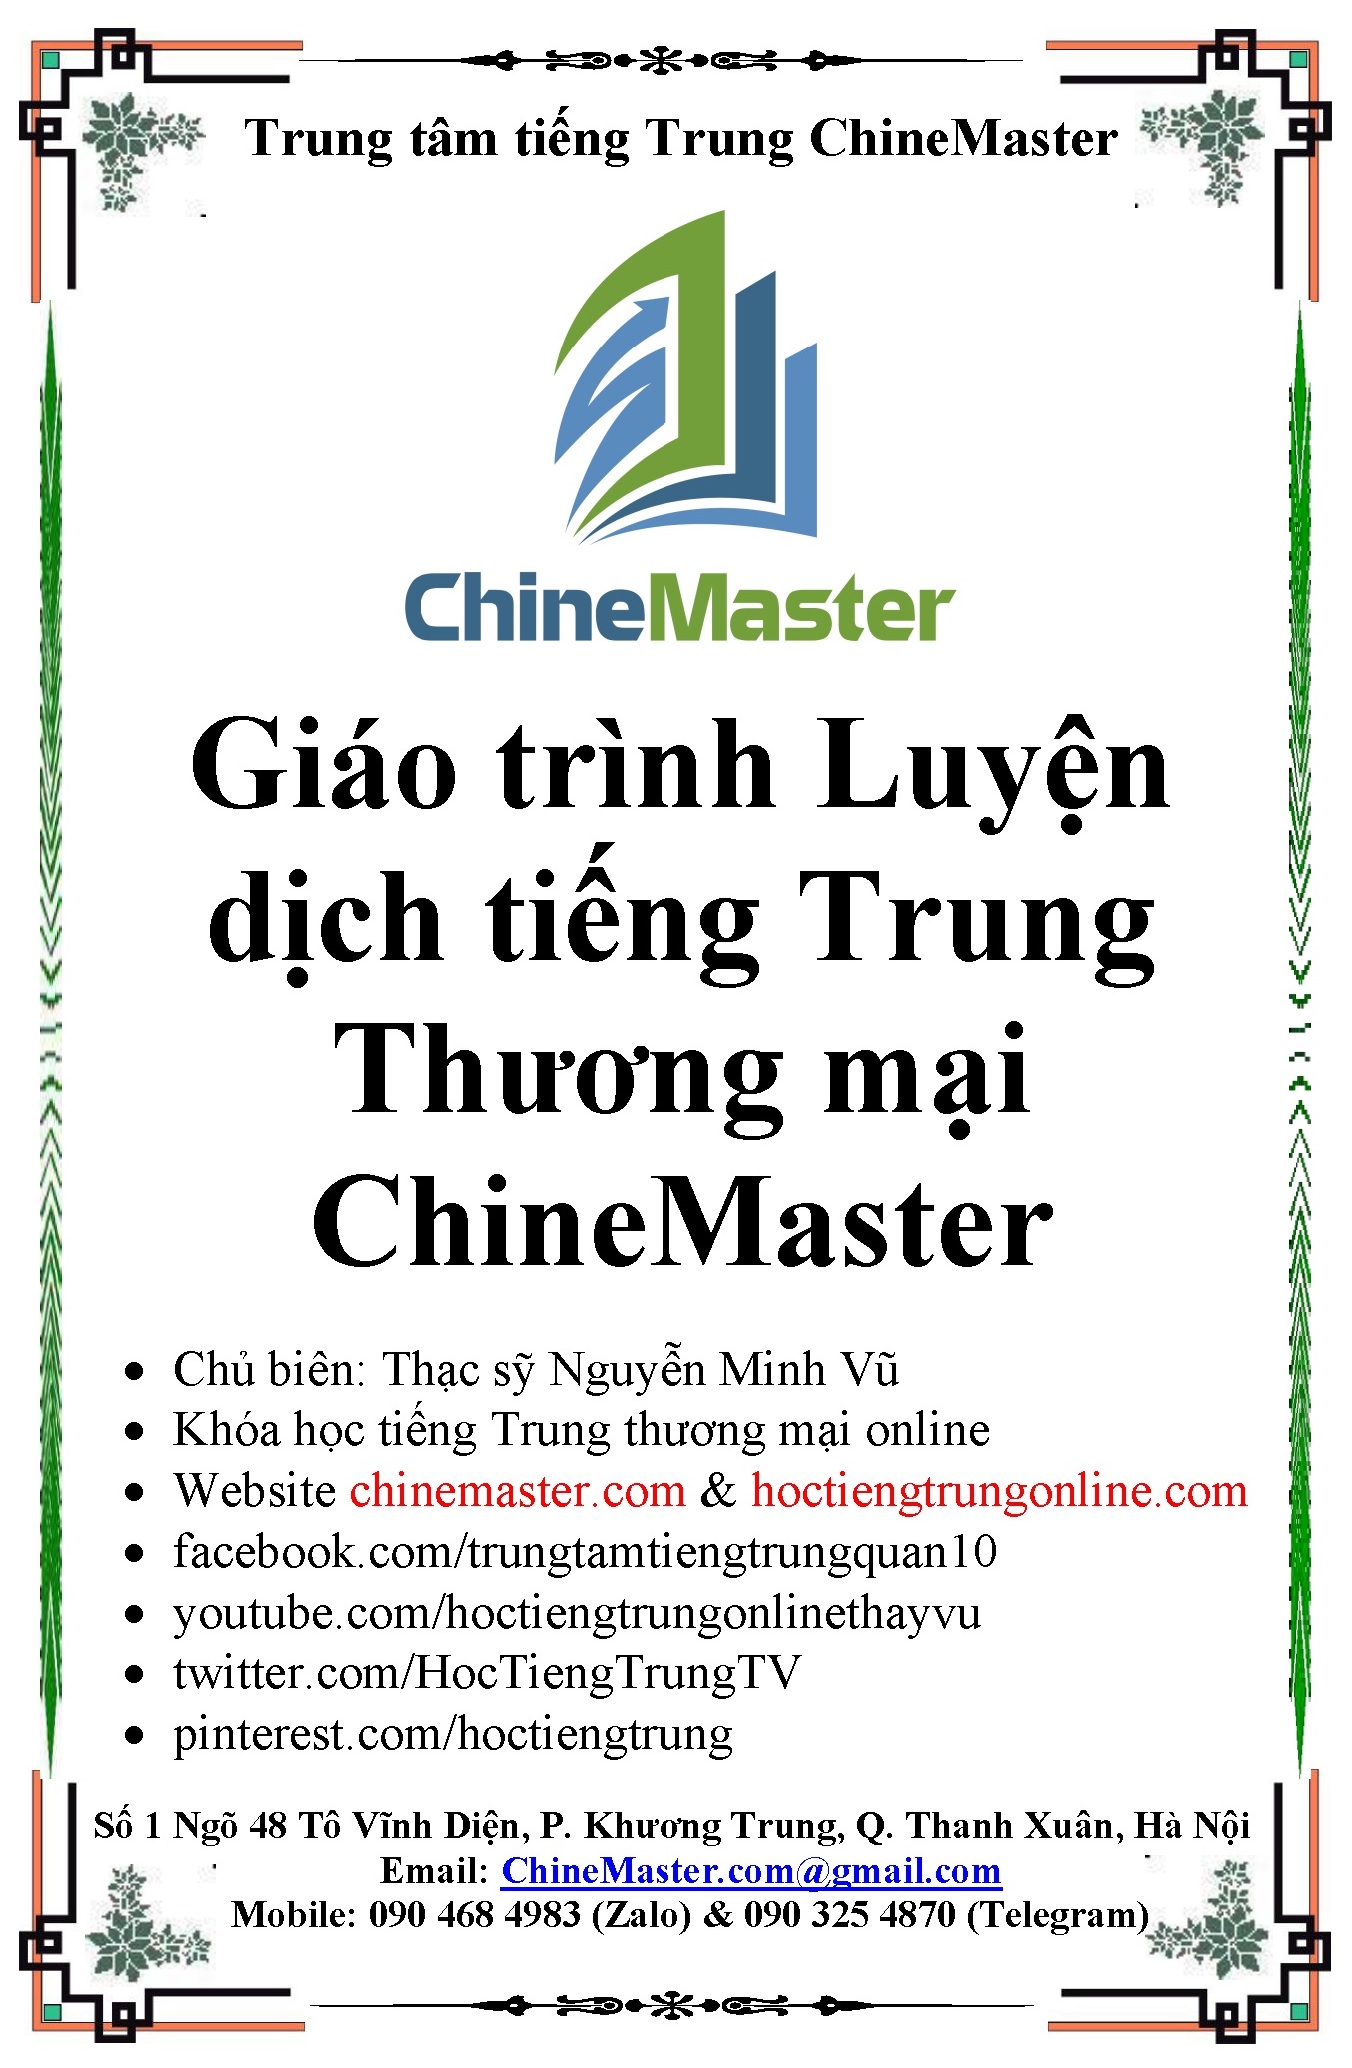 Bộ sách giáo trình luyện dịch tiếng Trung thương mại ChineMaster toàn tập của Tác giả Nguyễn Minh Vũ chuyên đào tạo các khóa học tiếng Trung thương mại online cơ bản nâng cao.